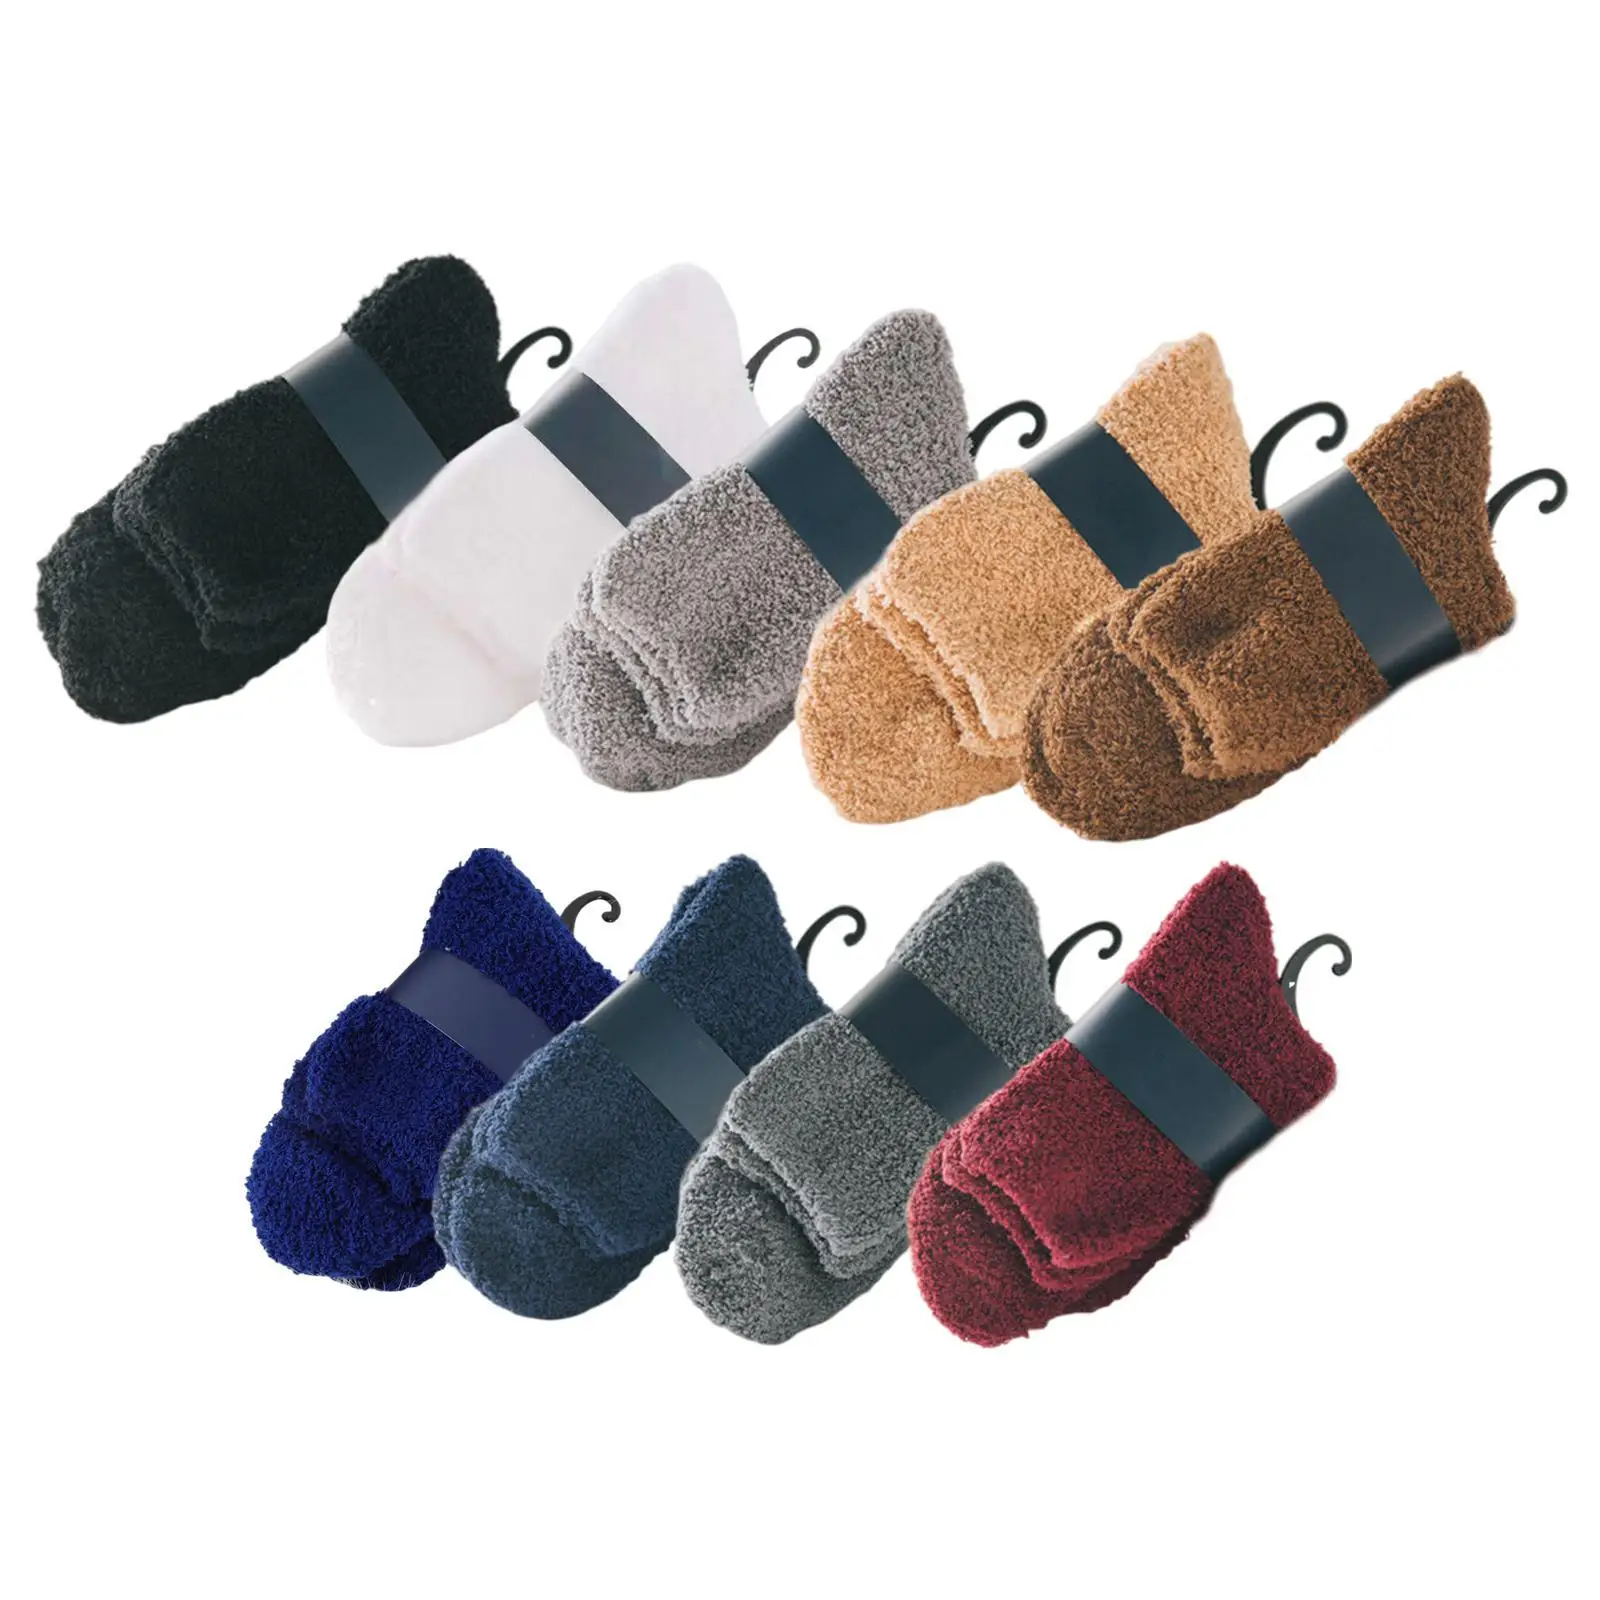 Fuzzy Socks for Women & Men Slipper Cozy Warm Winter Sleep   Christmas Gift Socks